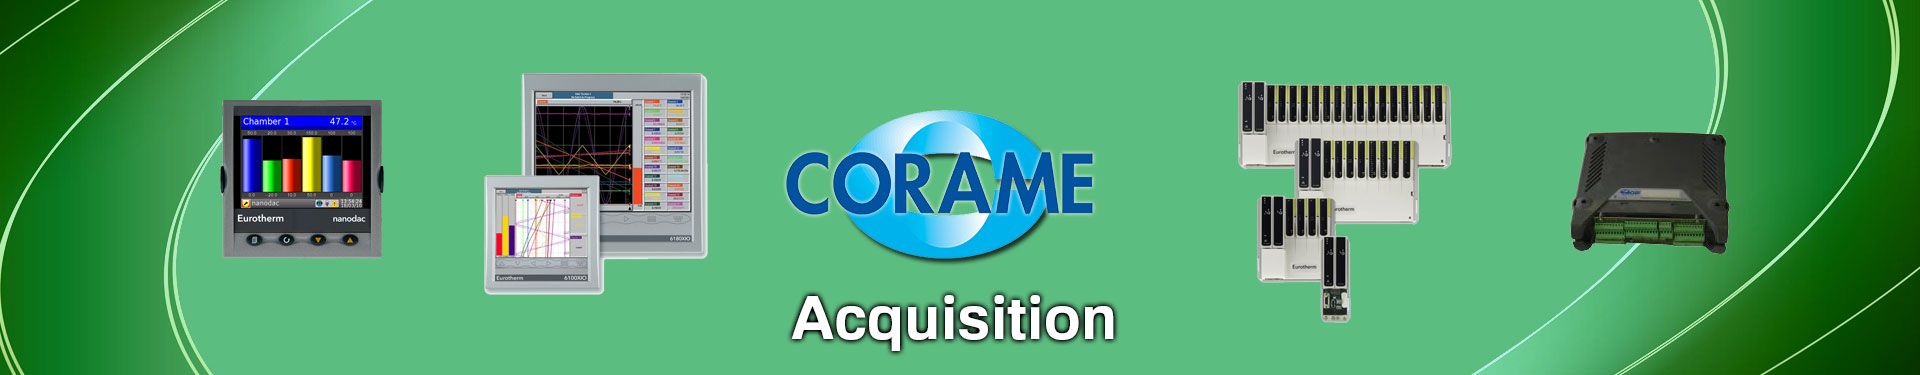 Produits Acquisition de données sélectionnés par Corame